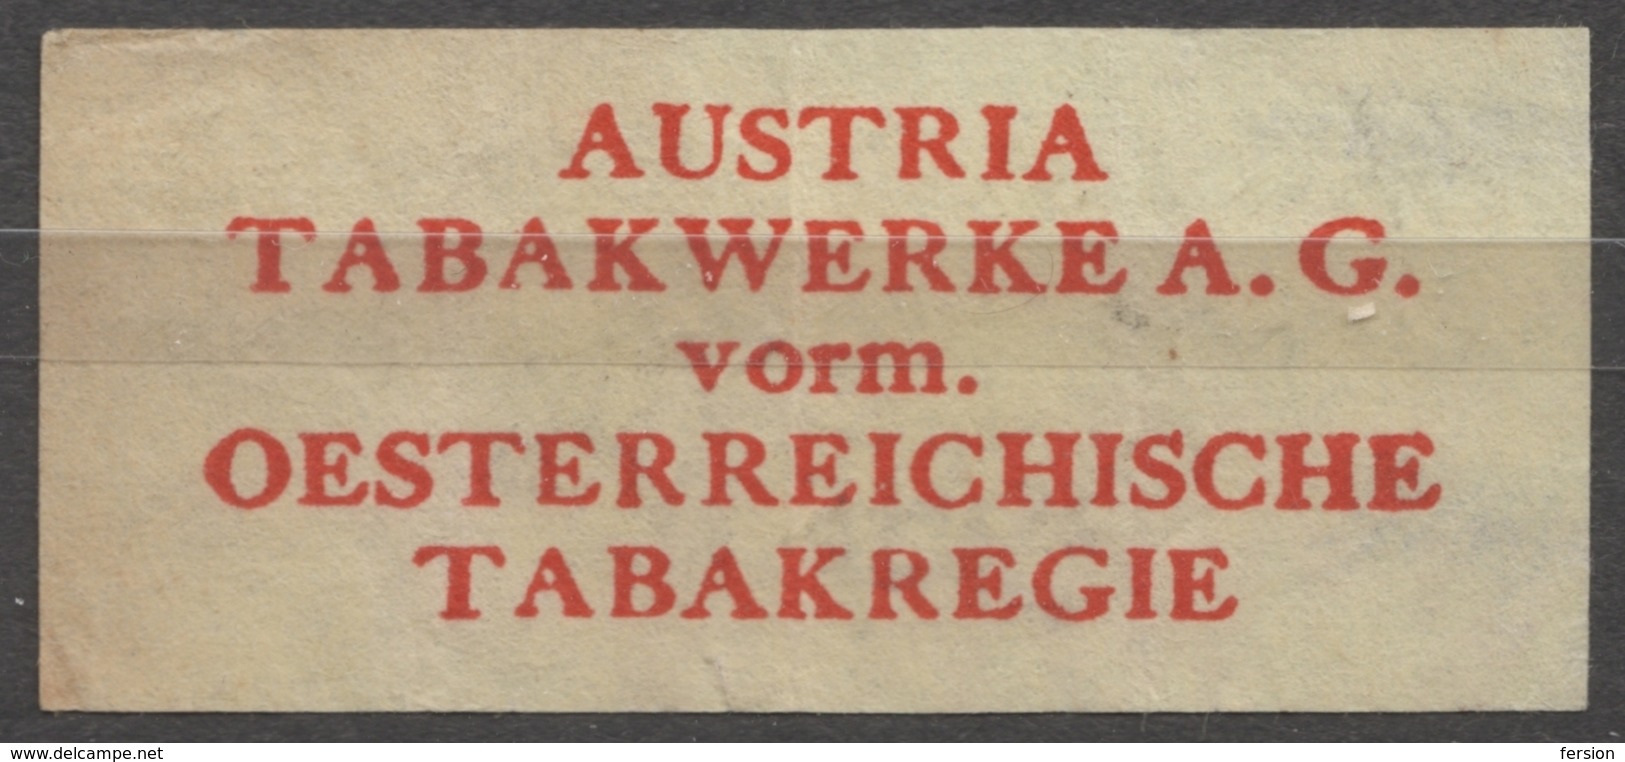 TABAKREGIE - AUSTRIA TABAKWERKE - CIGARETTE Cigarette Tobacco - Label Vignette - Labels